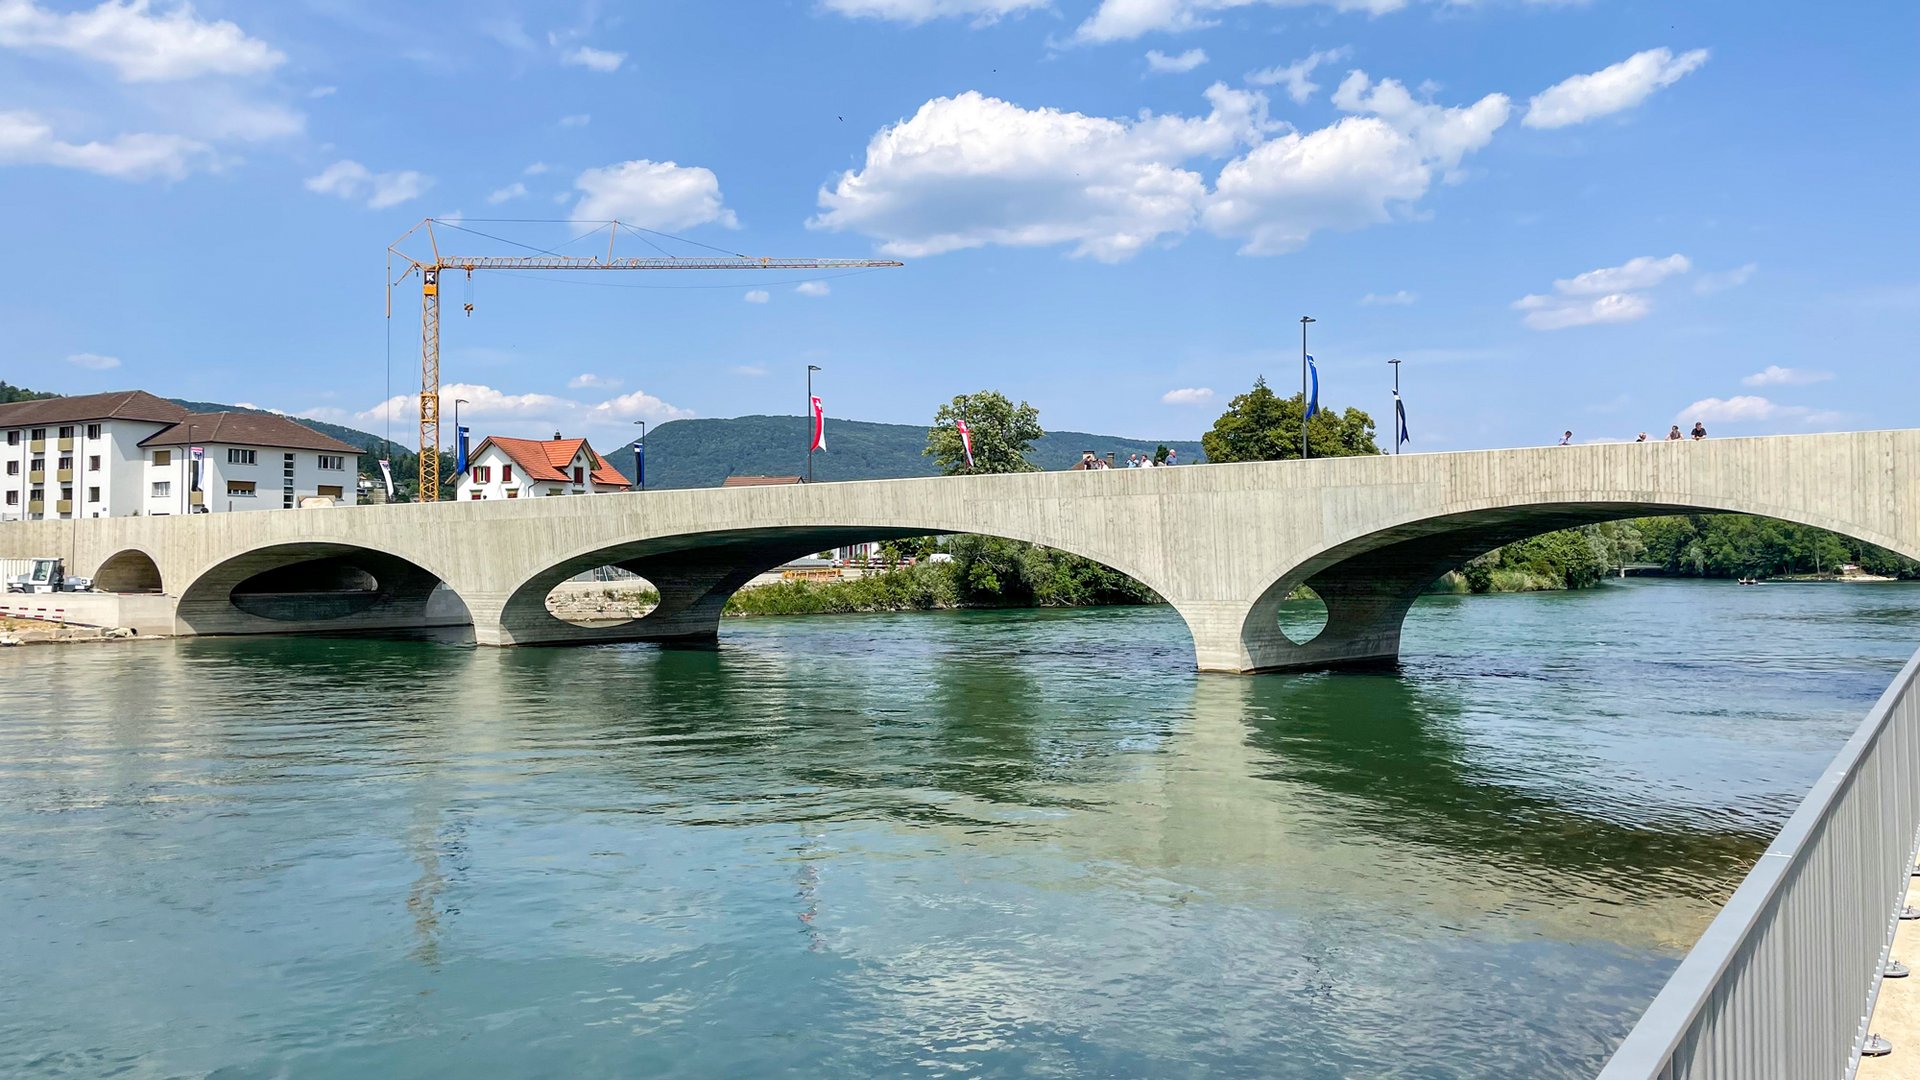 Kettenbrücke «Pont Neuf» in Aarau, Schweiz. Die Brücke wurde 1843 erbaut und steht unter Denkmalschutz. Die Brücke ist eine Steinbogenbrücke mit drei Bögen. Die Bögen sind aus hellem Stein und sind nun in einem guten Zustand. Die Brücke hat einen Gehweg für Fussgänger und Radfahrer.